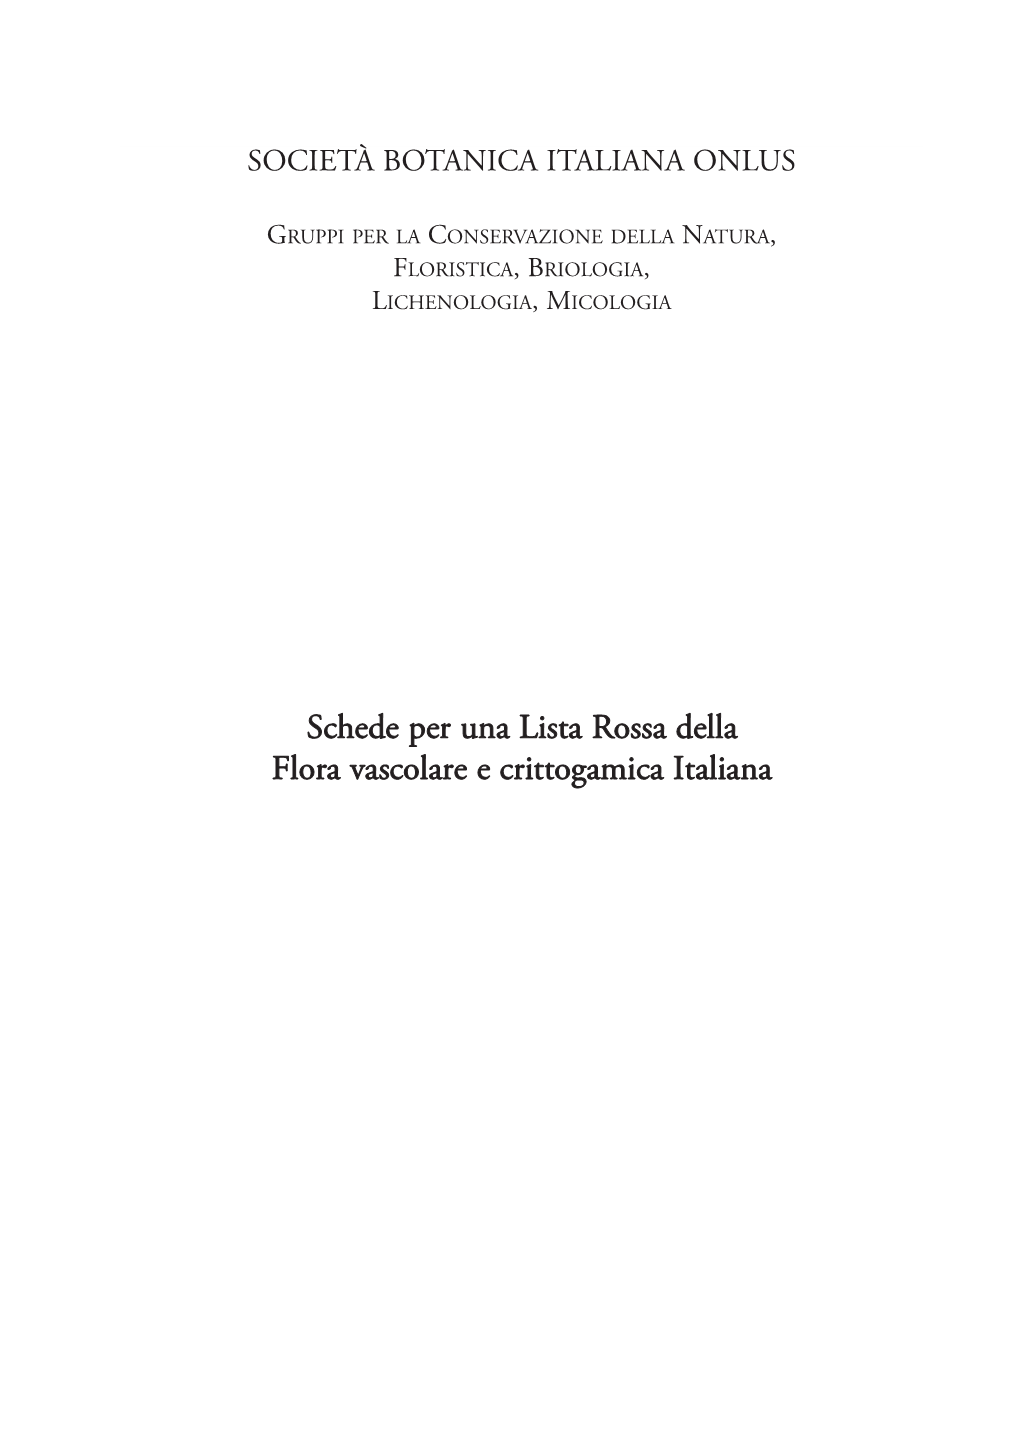 Schede Per Una Lista Rossa Della Flora Vascolare E Crittogamica Italiana Editori